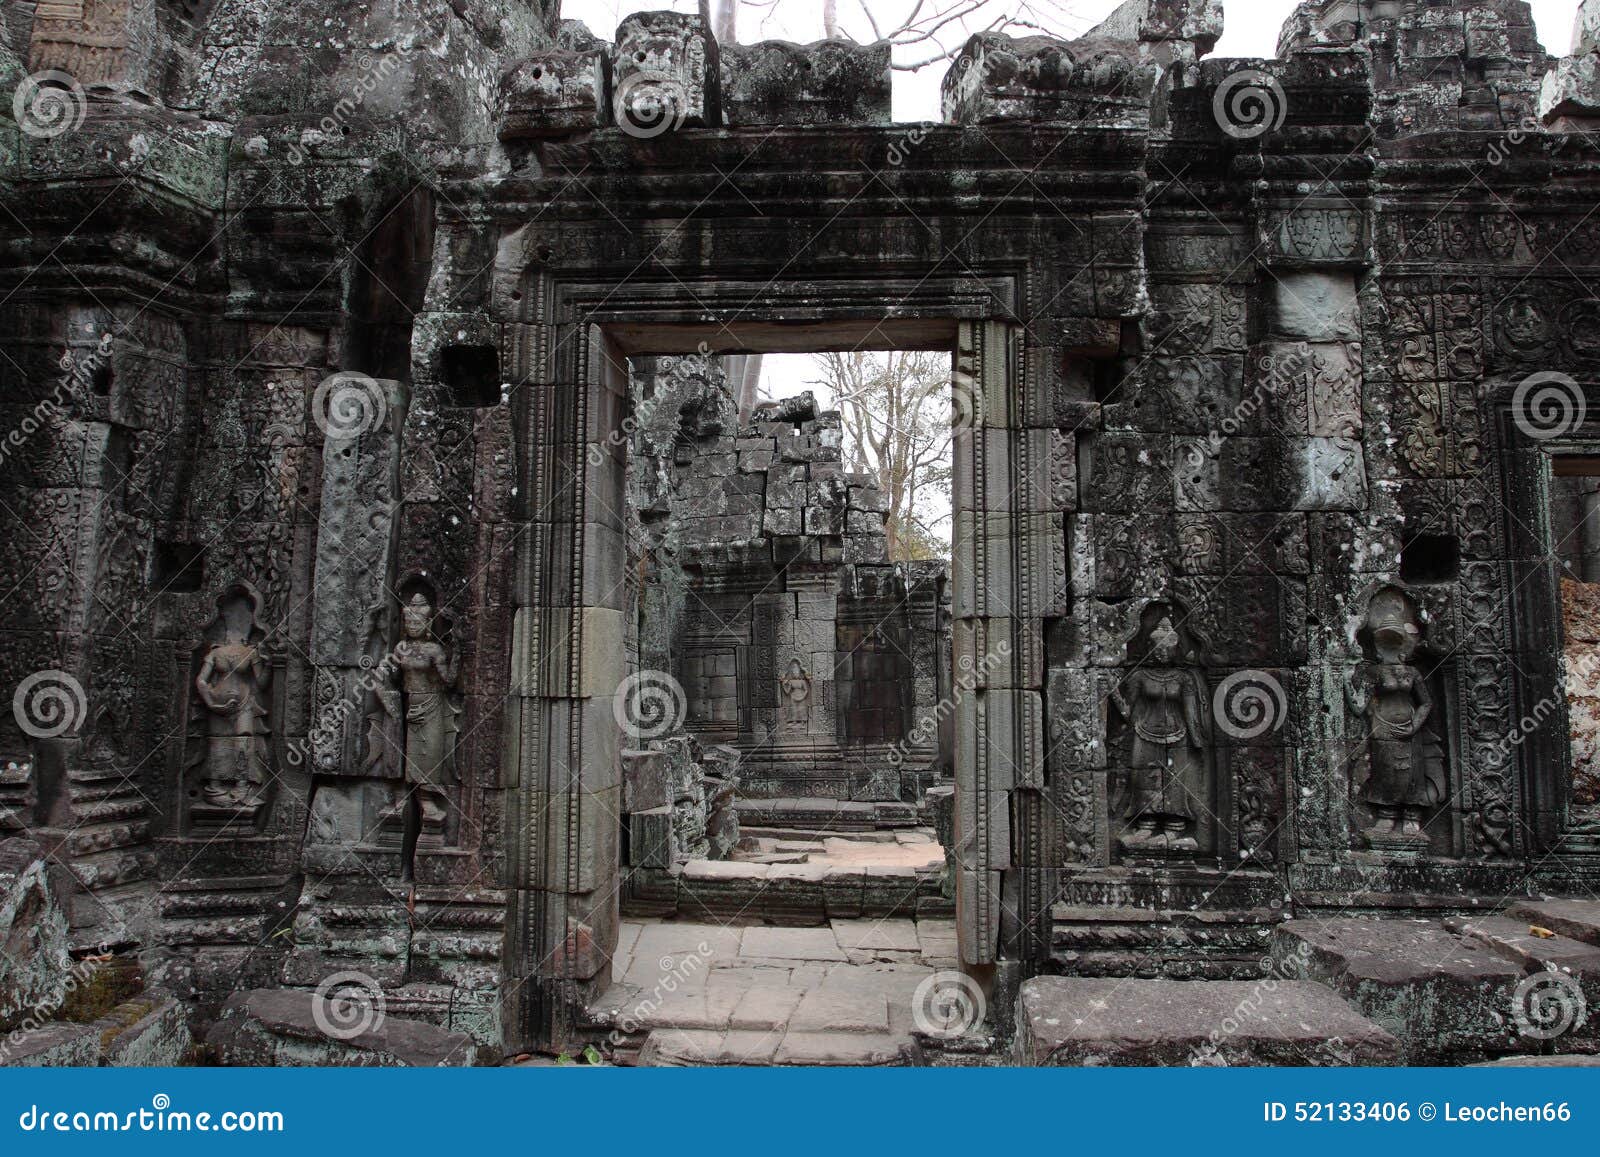 banteay kedi temple in angkor